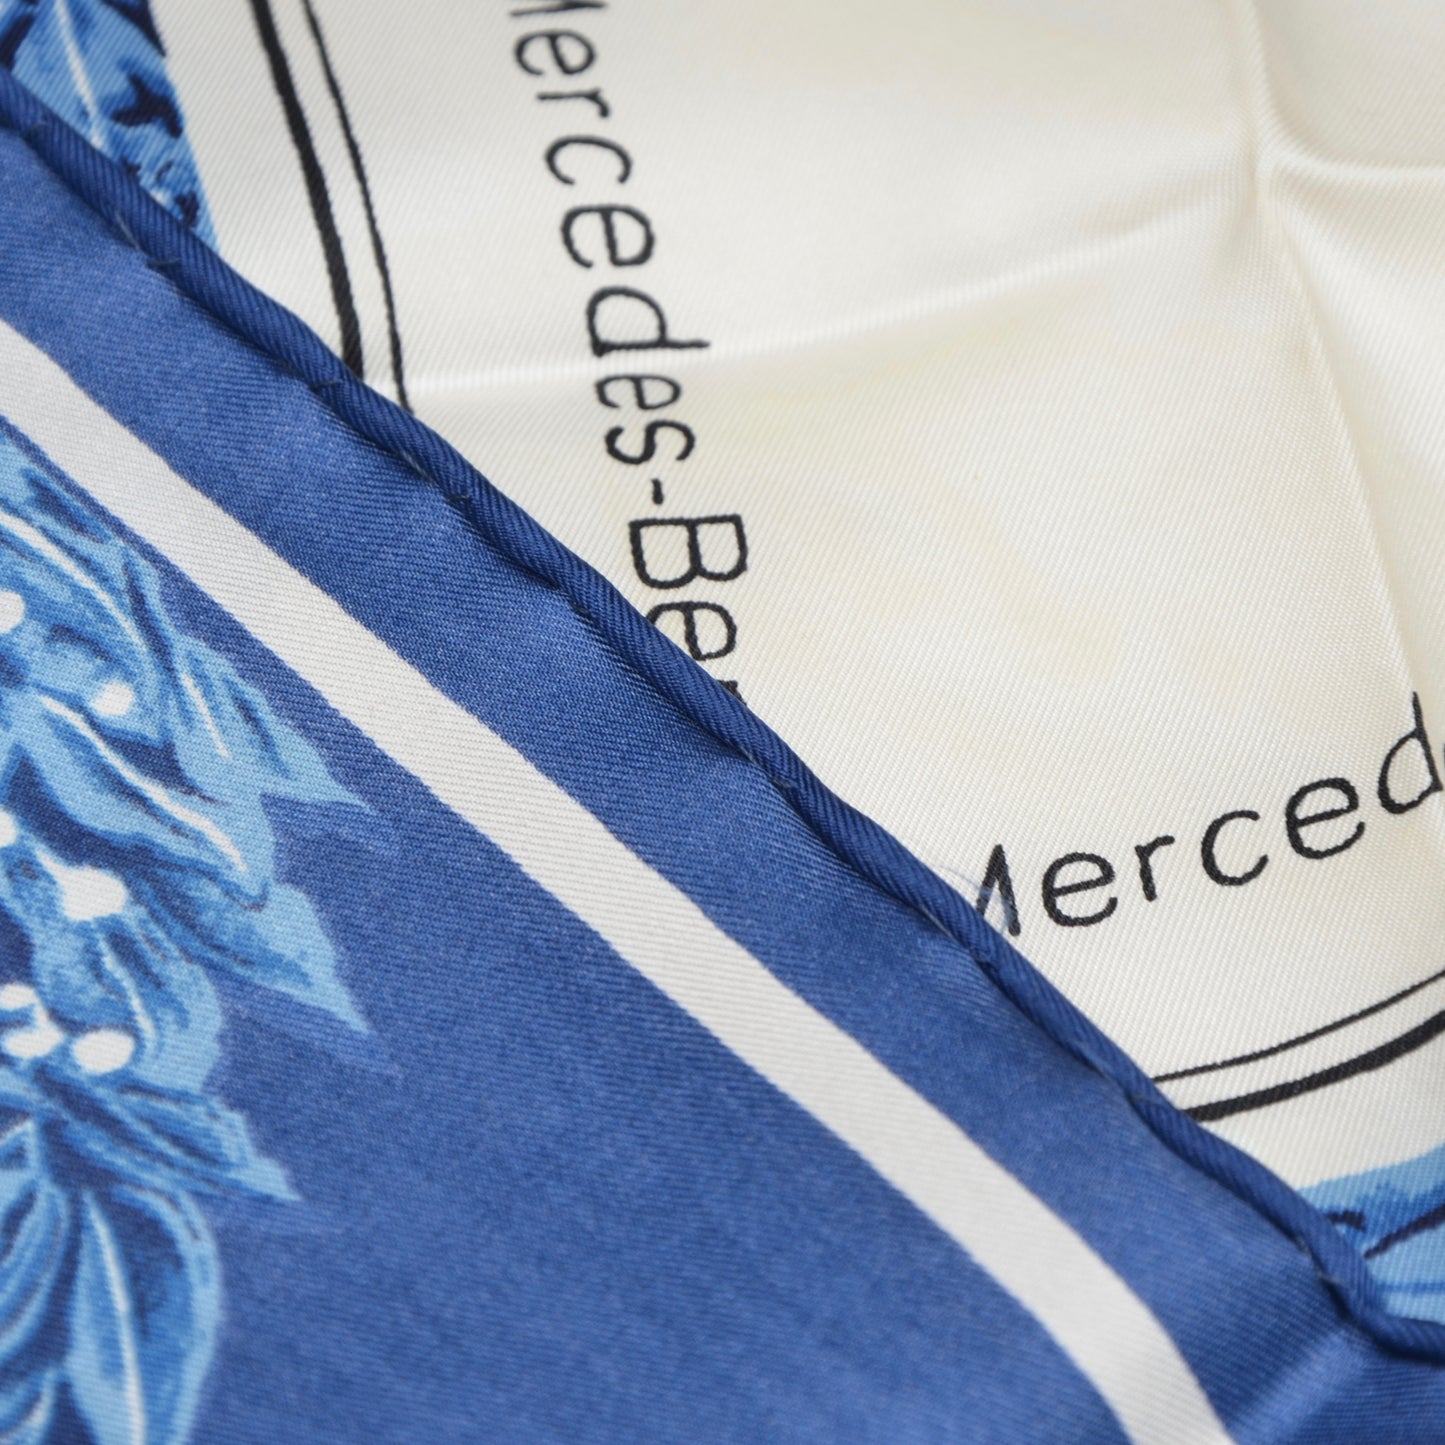 Mercedes Benz Silk Scarf - Blue & White